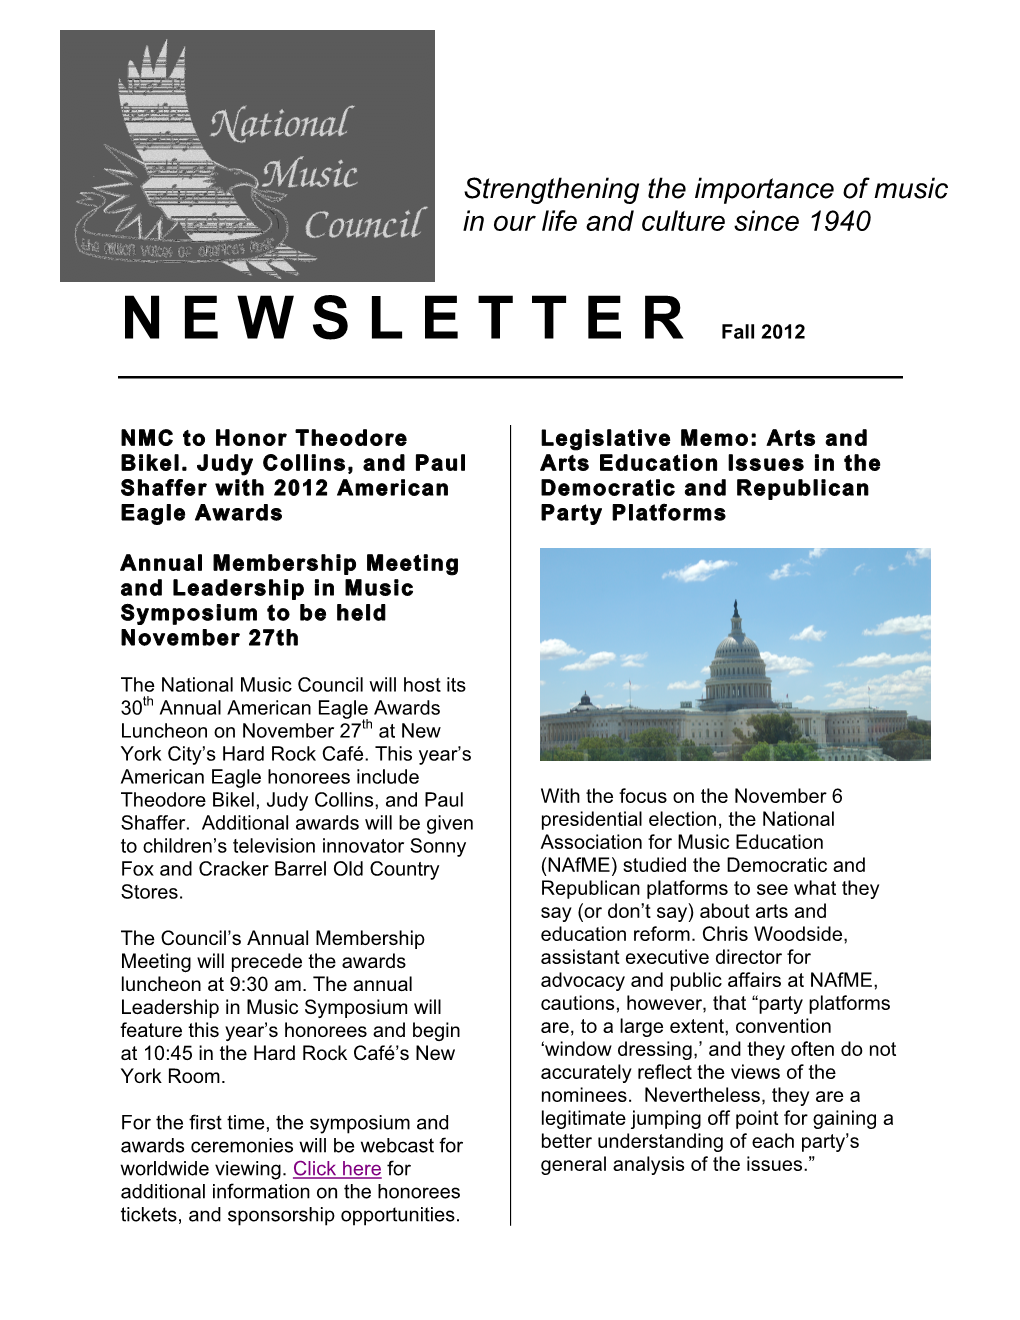 Newsletter Fall 2012